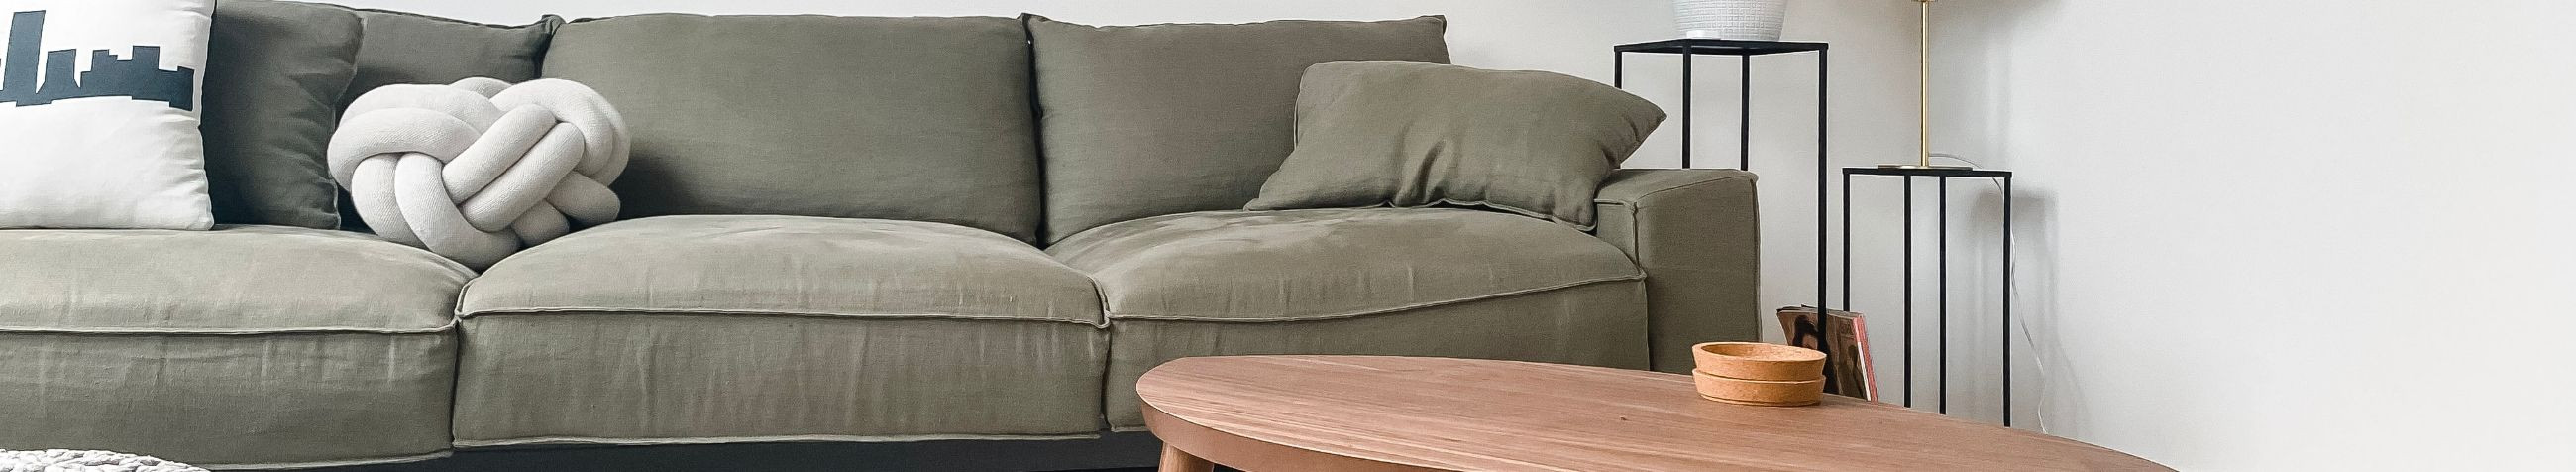 Ettevõte DI sohva OÜ valmistab eritellimusel pehmet mööblit, diivaneid ja voodeid, et muuta sinu kodu veelgi mugavamaks ja hubasemaks